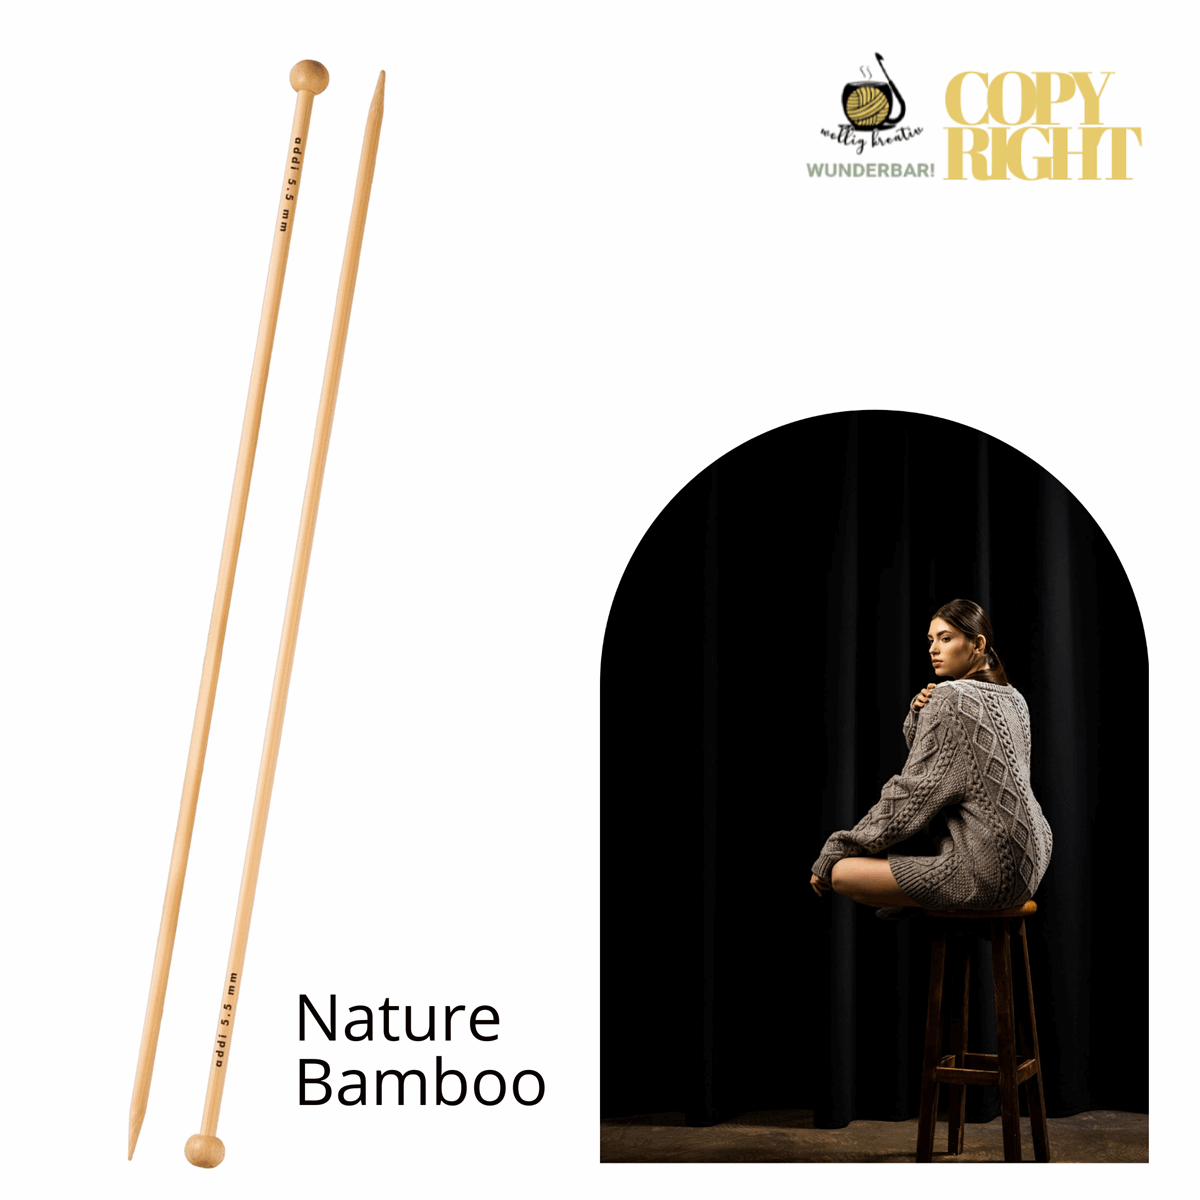 Addi, Nature Bamboo jacket knitting needle, 65007, size 6, length 35